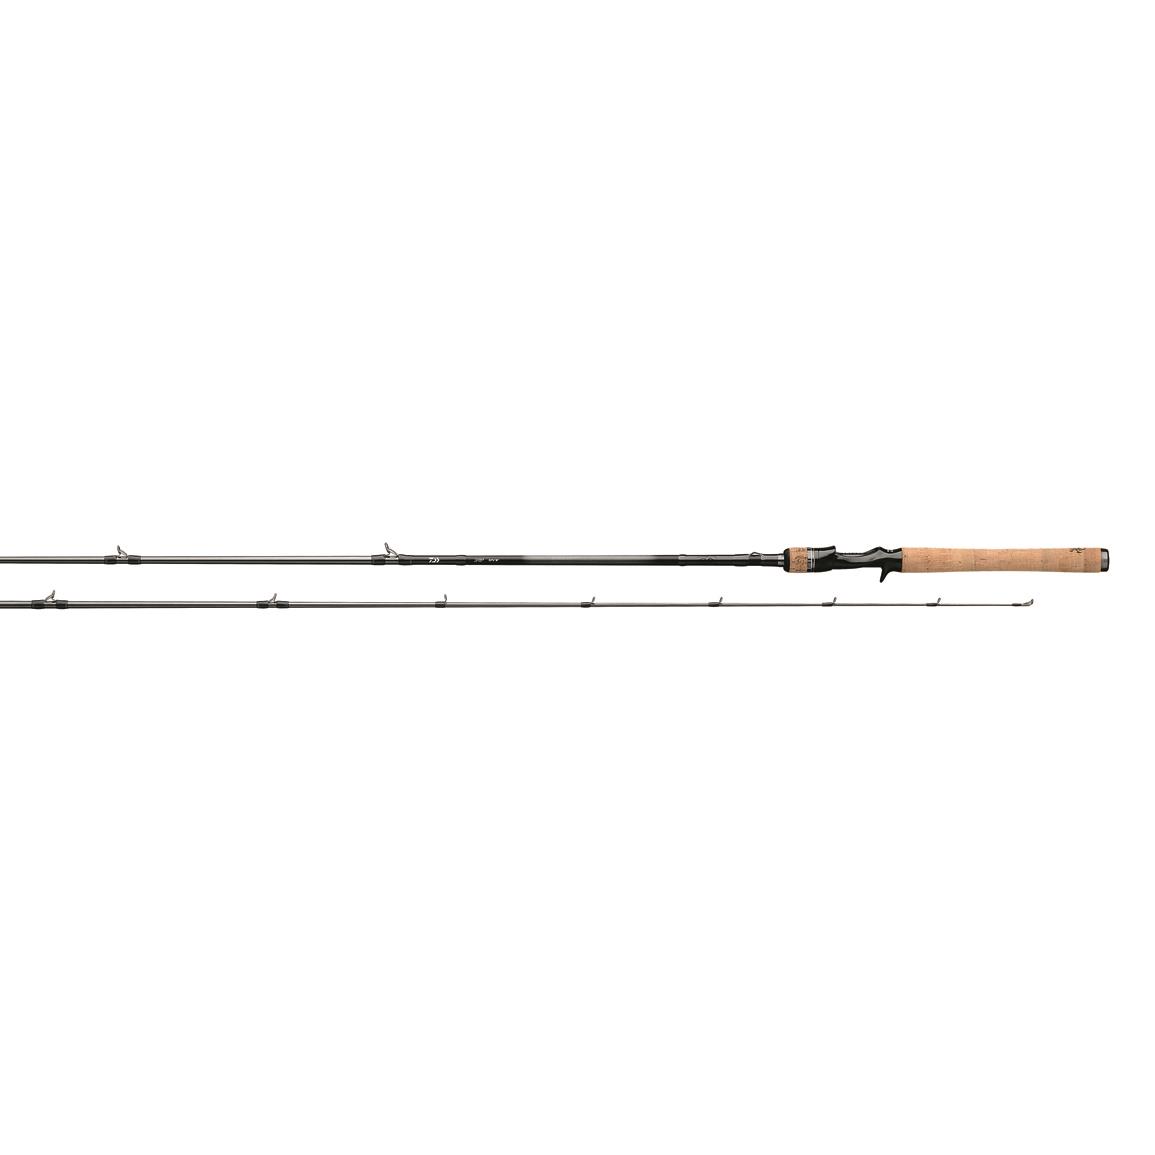 Daiwa Tatula Casting Rod, 6'10" Length, Medium Heavy Power, Fast Action